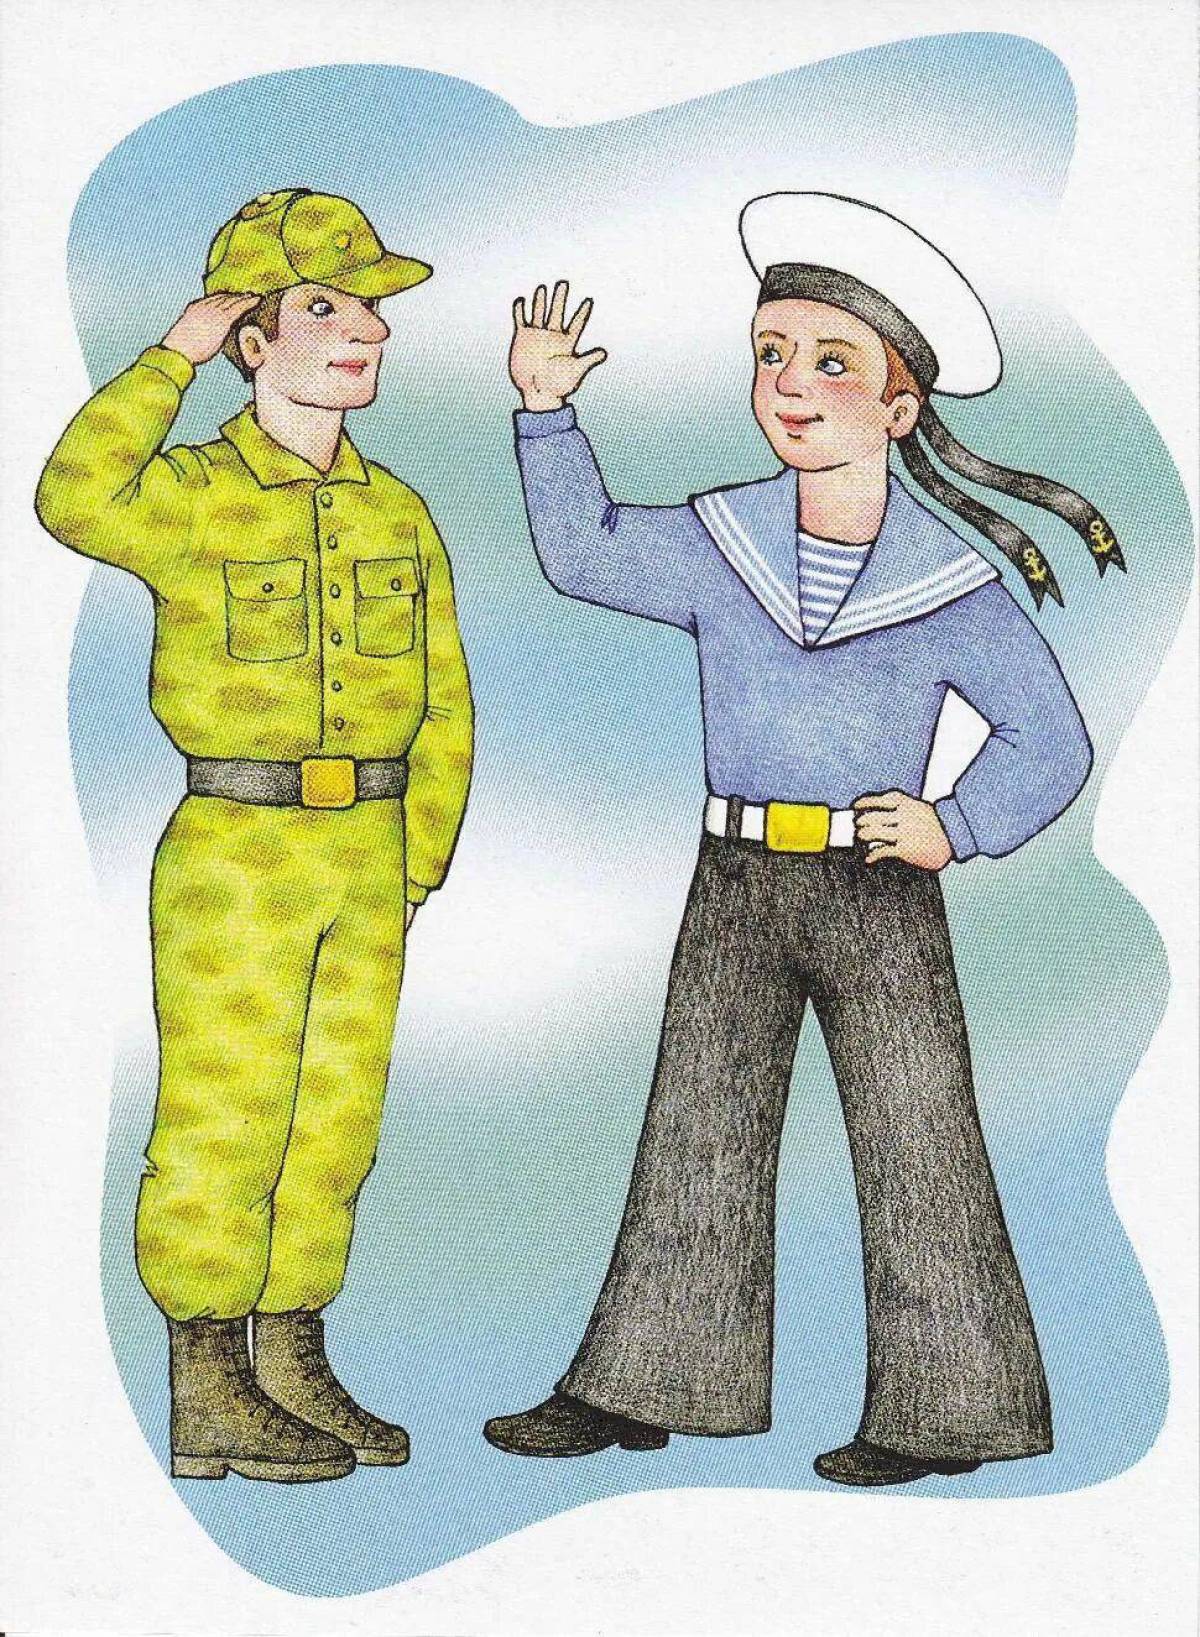 Профессии отца. Военные профессии для детей дошкольного возраста. Изображения военных для детей. Иллюстрации военных профессий для детей. Профессии картинки для детей.